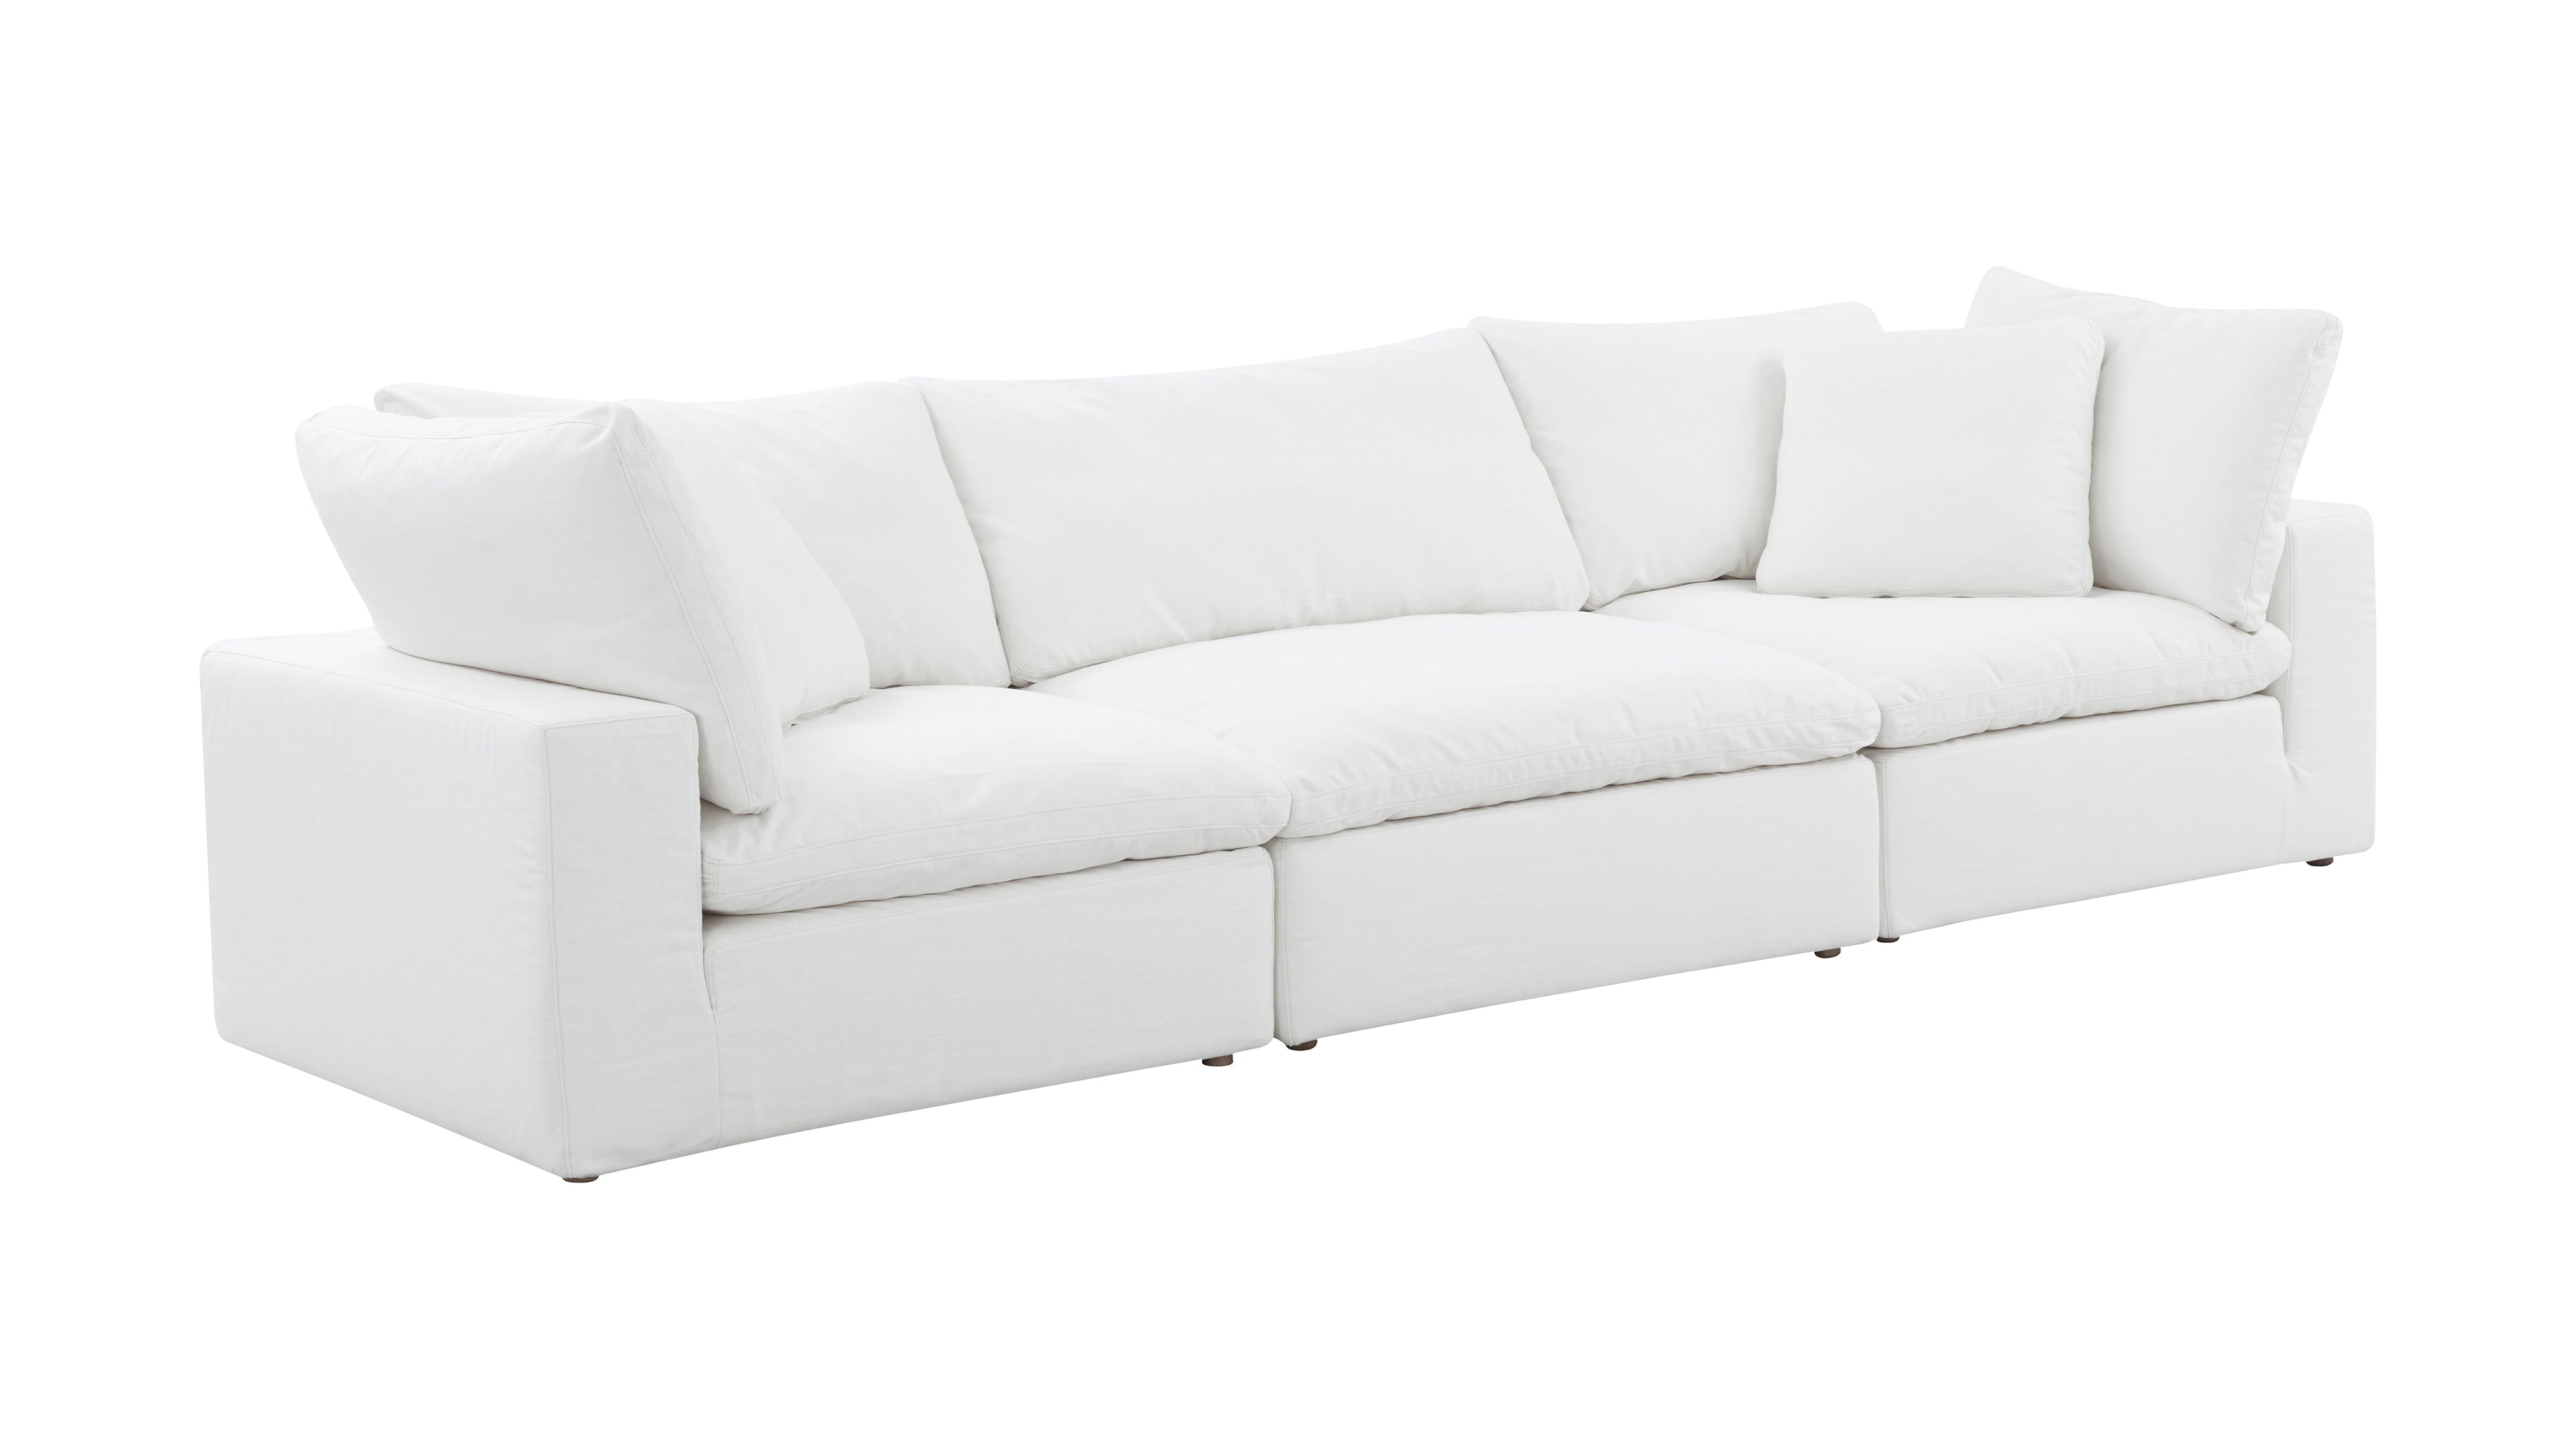 Movie Night™ 3-Piece Modular Sofa, Large, Brie - Image 4